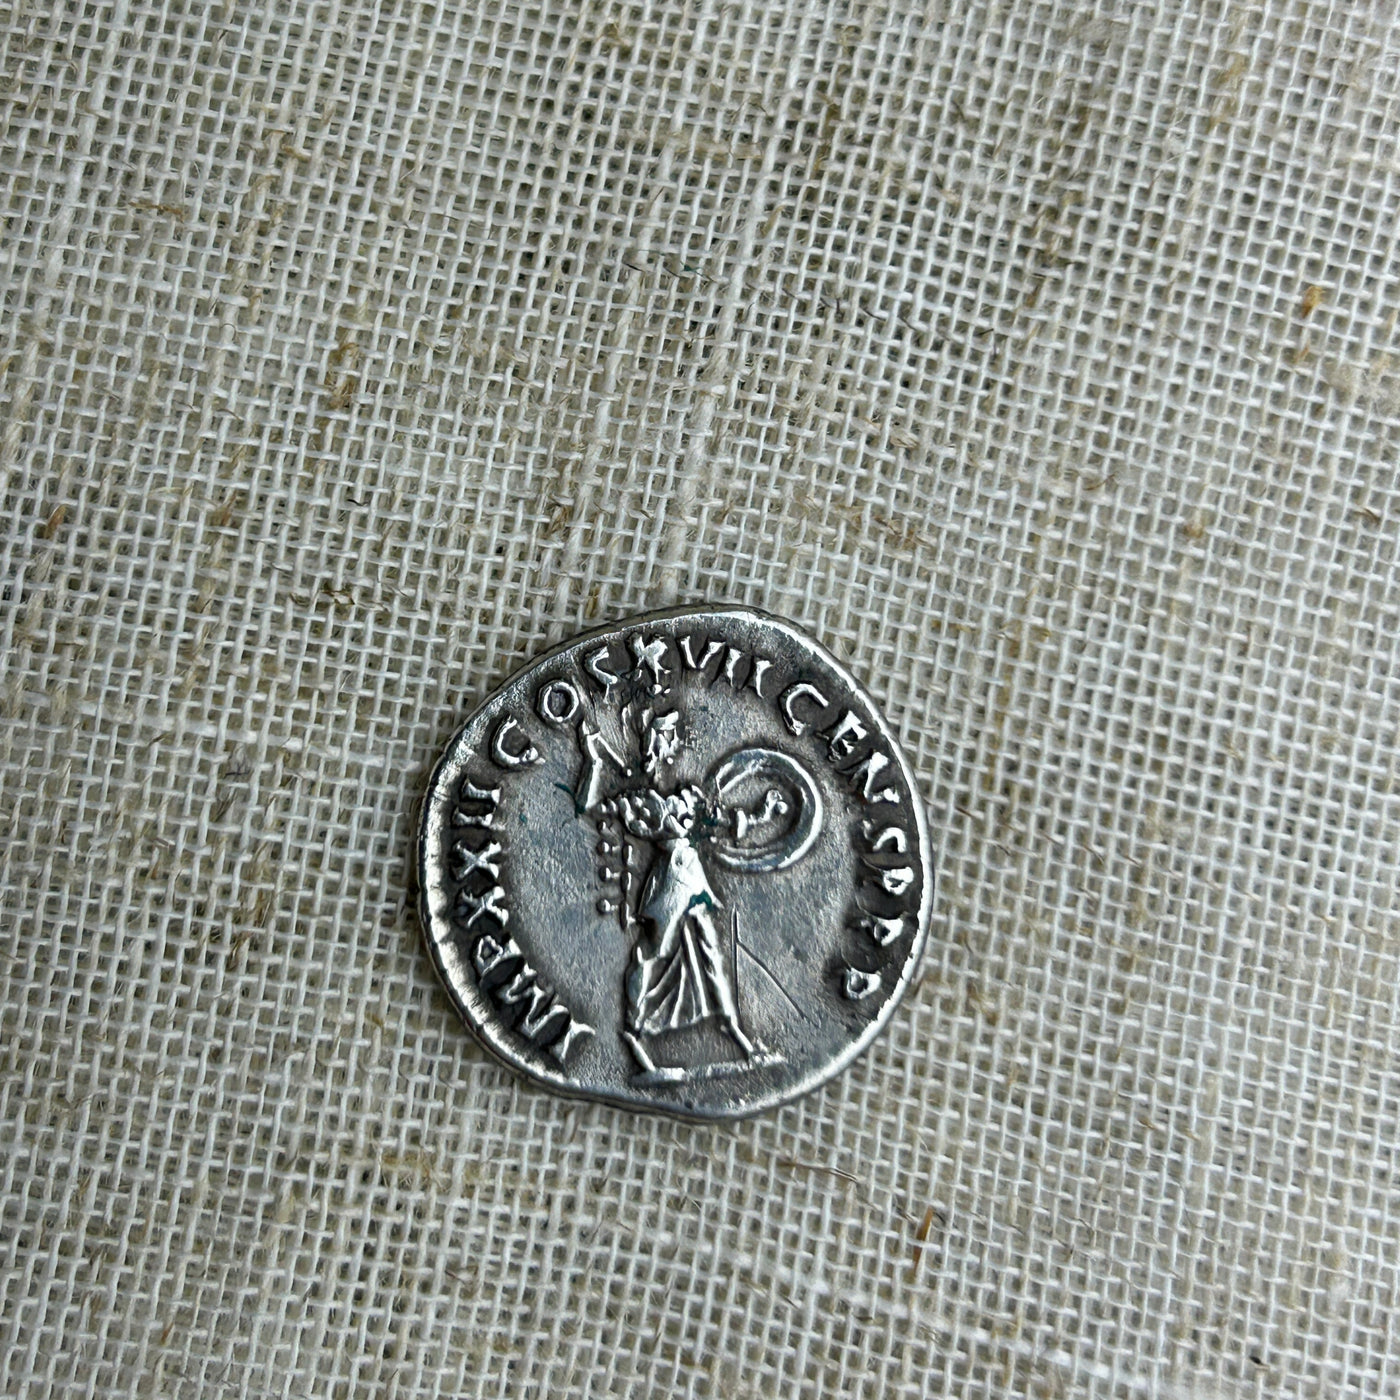 Silver Minerva Roman Coin Pendant